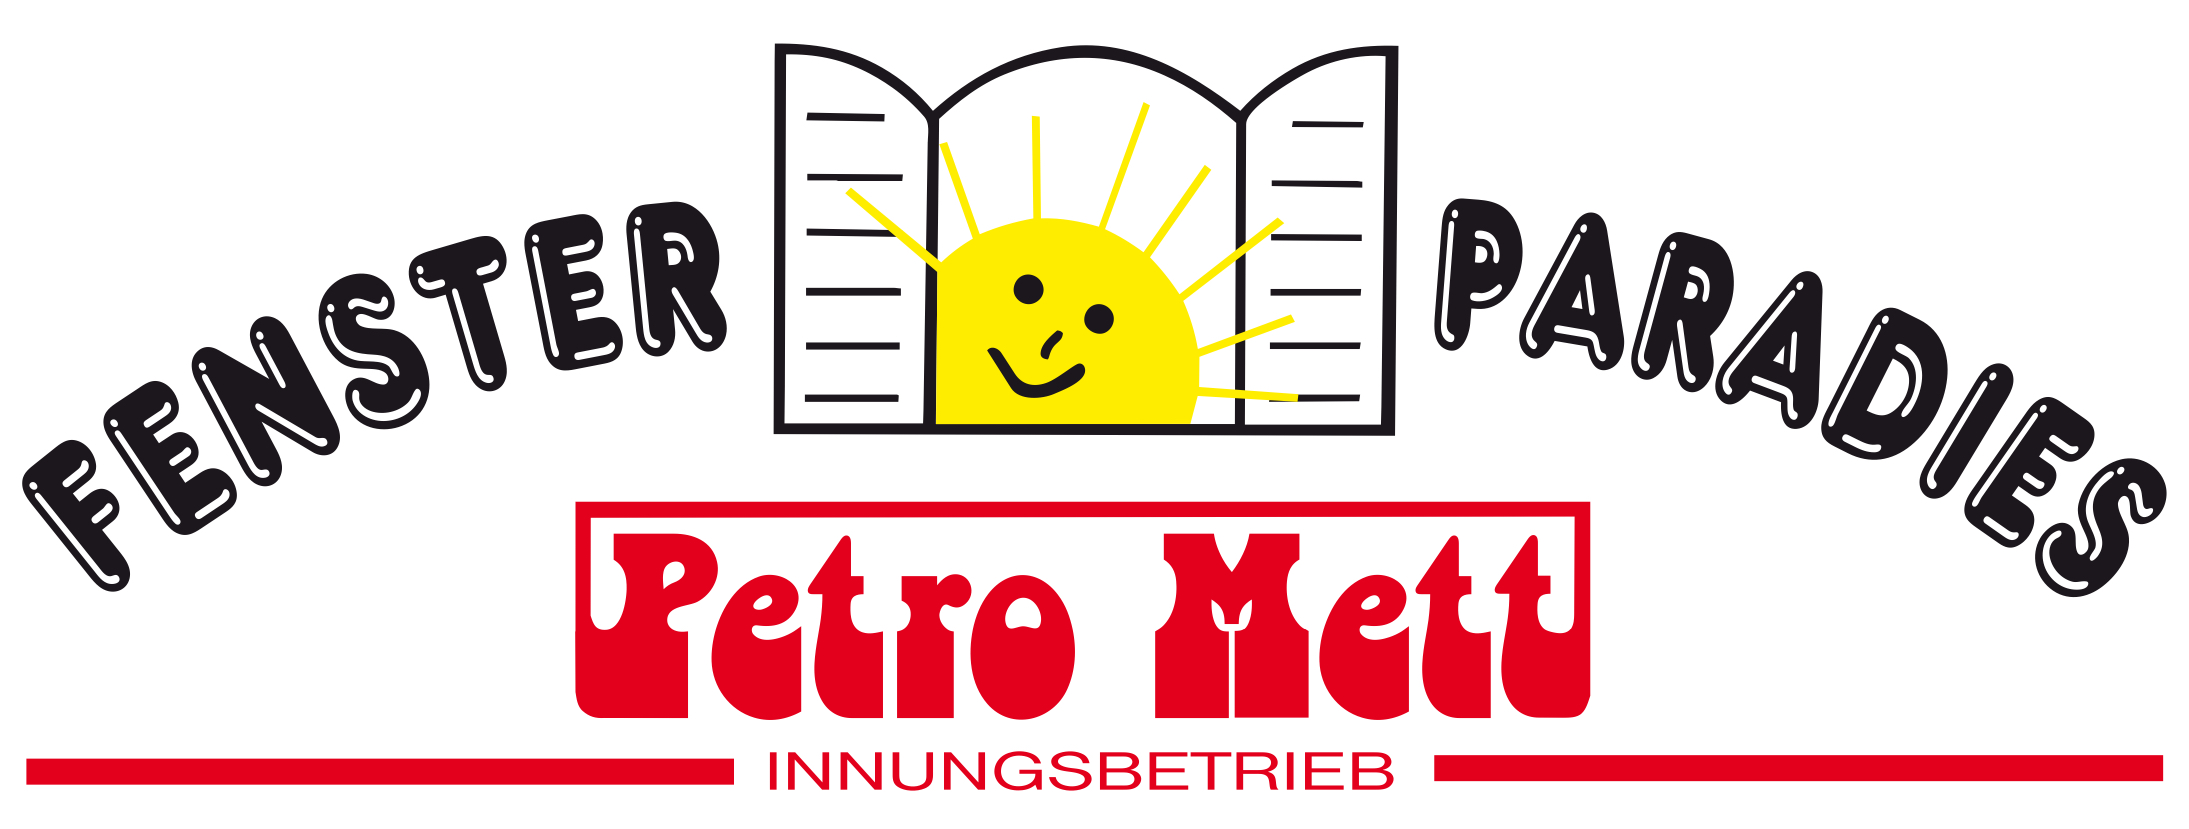 Fenster Paradies - Petro Mett